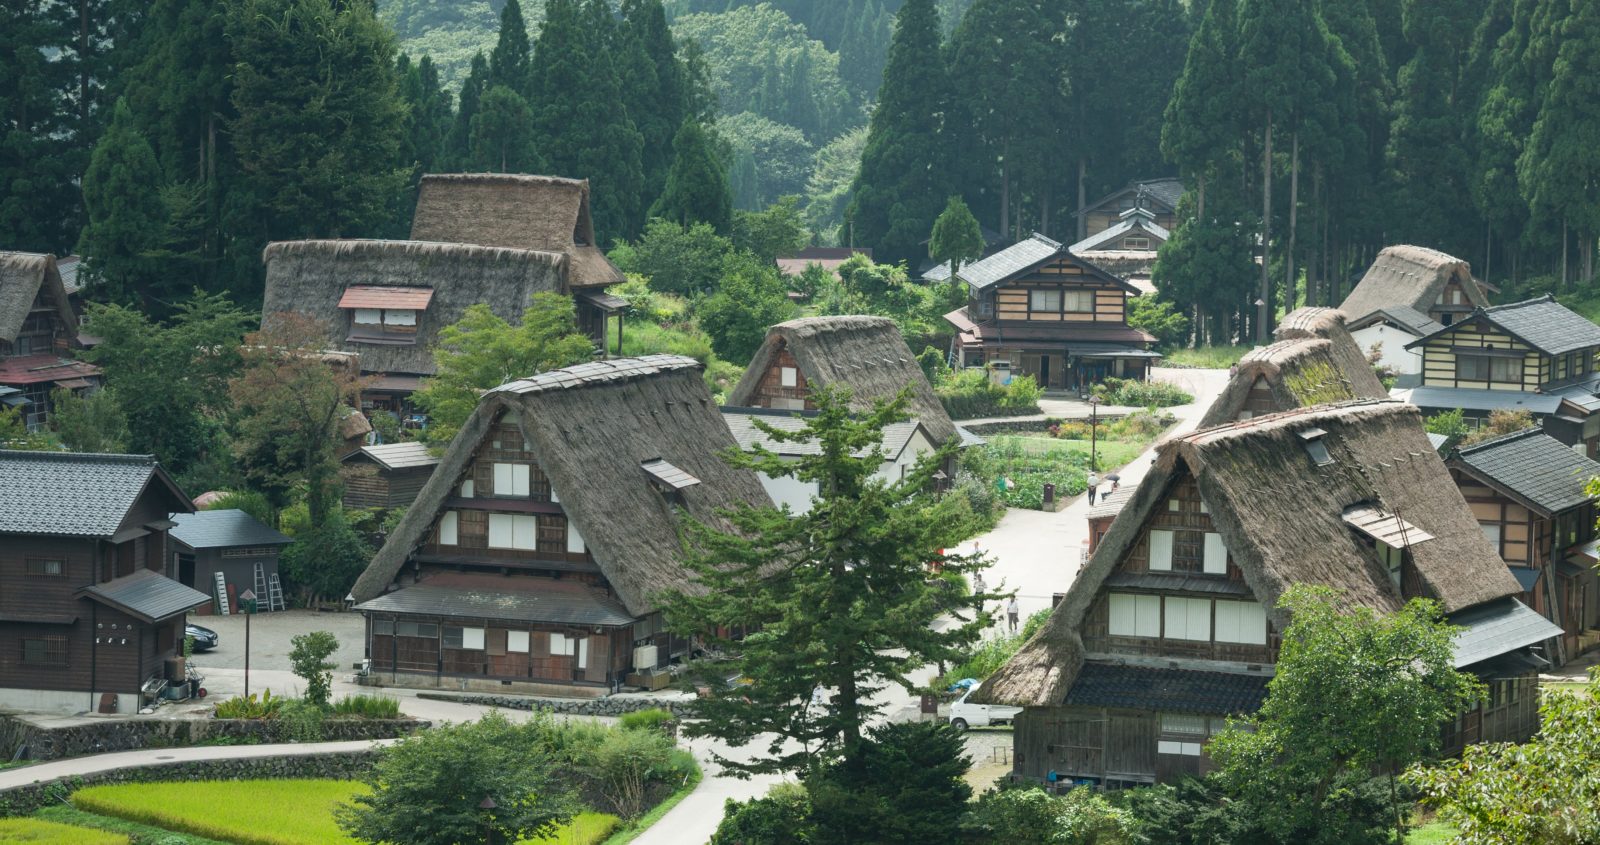 Historic mountain village in Japan, Shirakawago